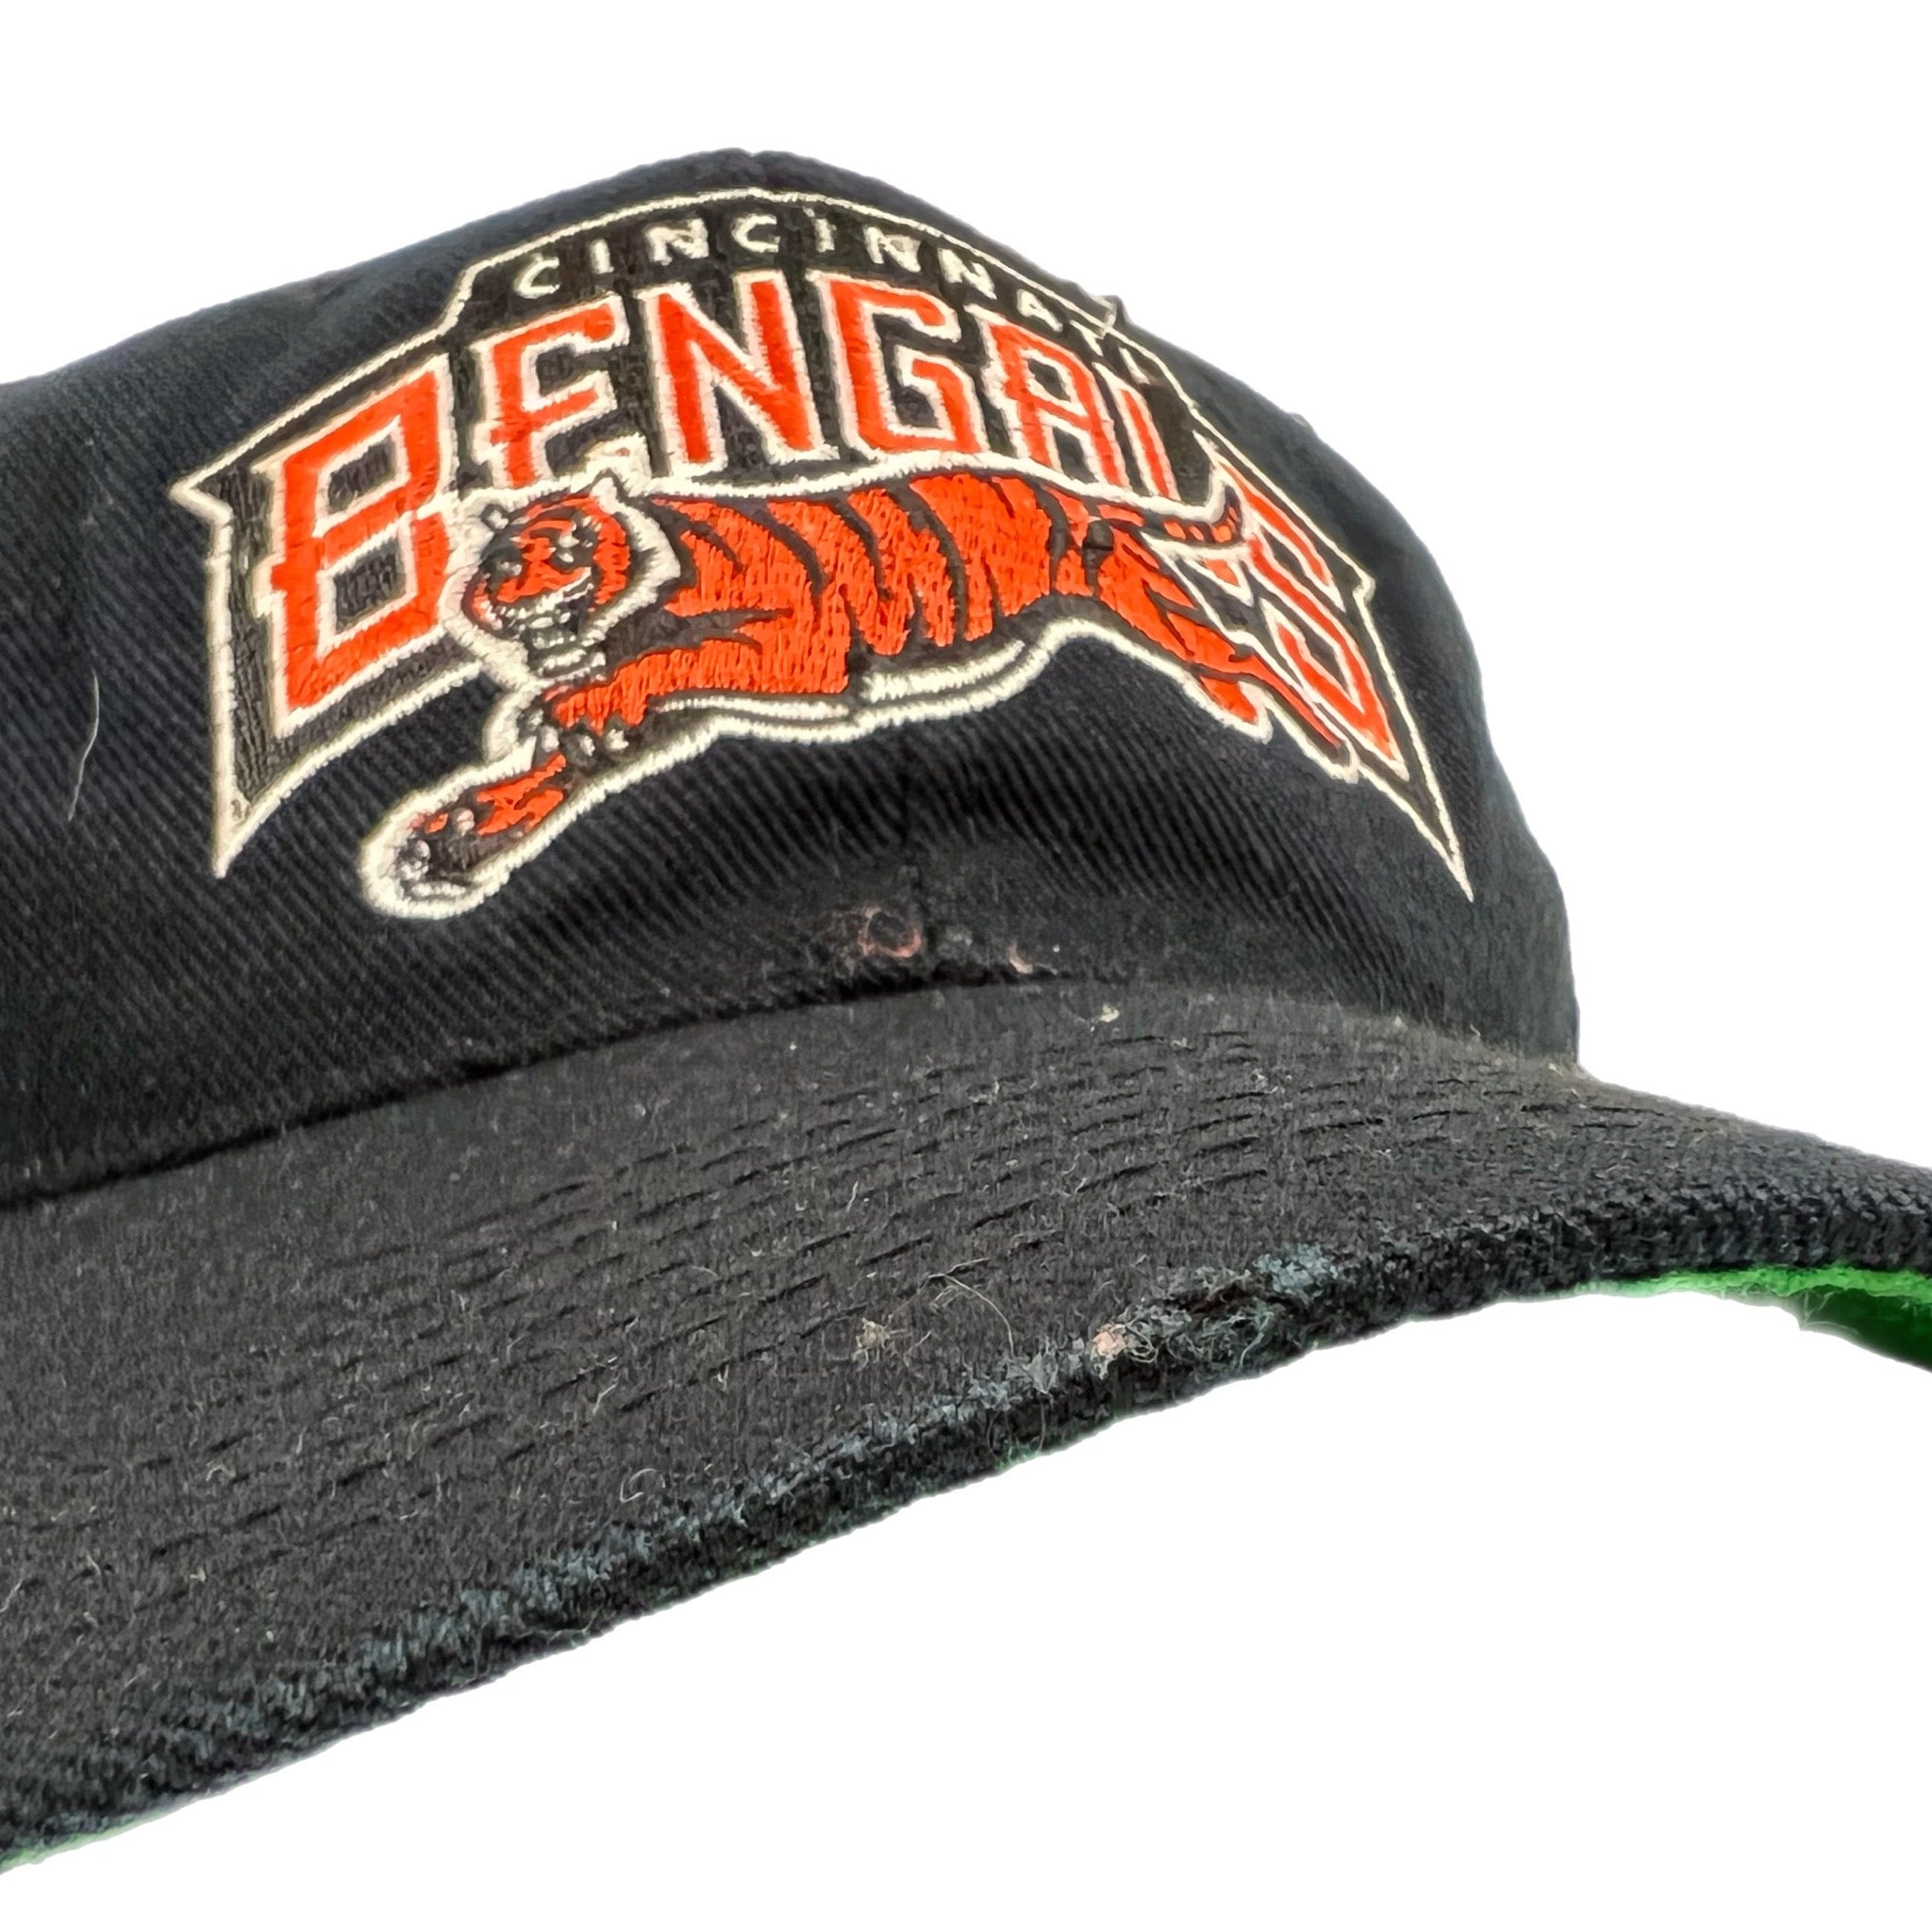 Vintage Cincinnati Bengals Sports Specialties Hat